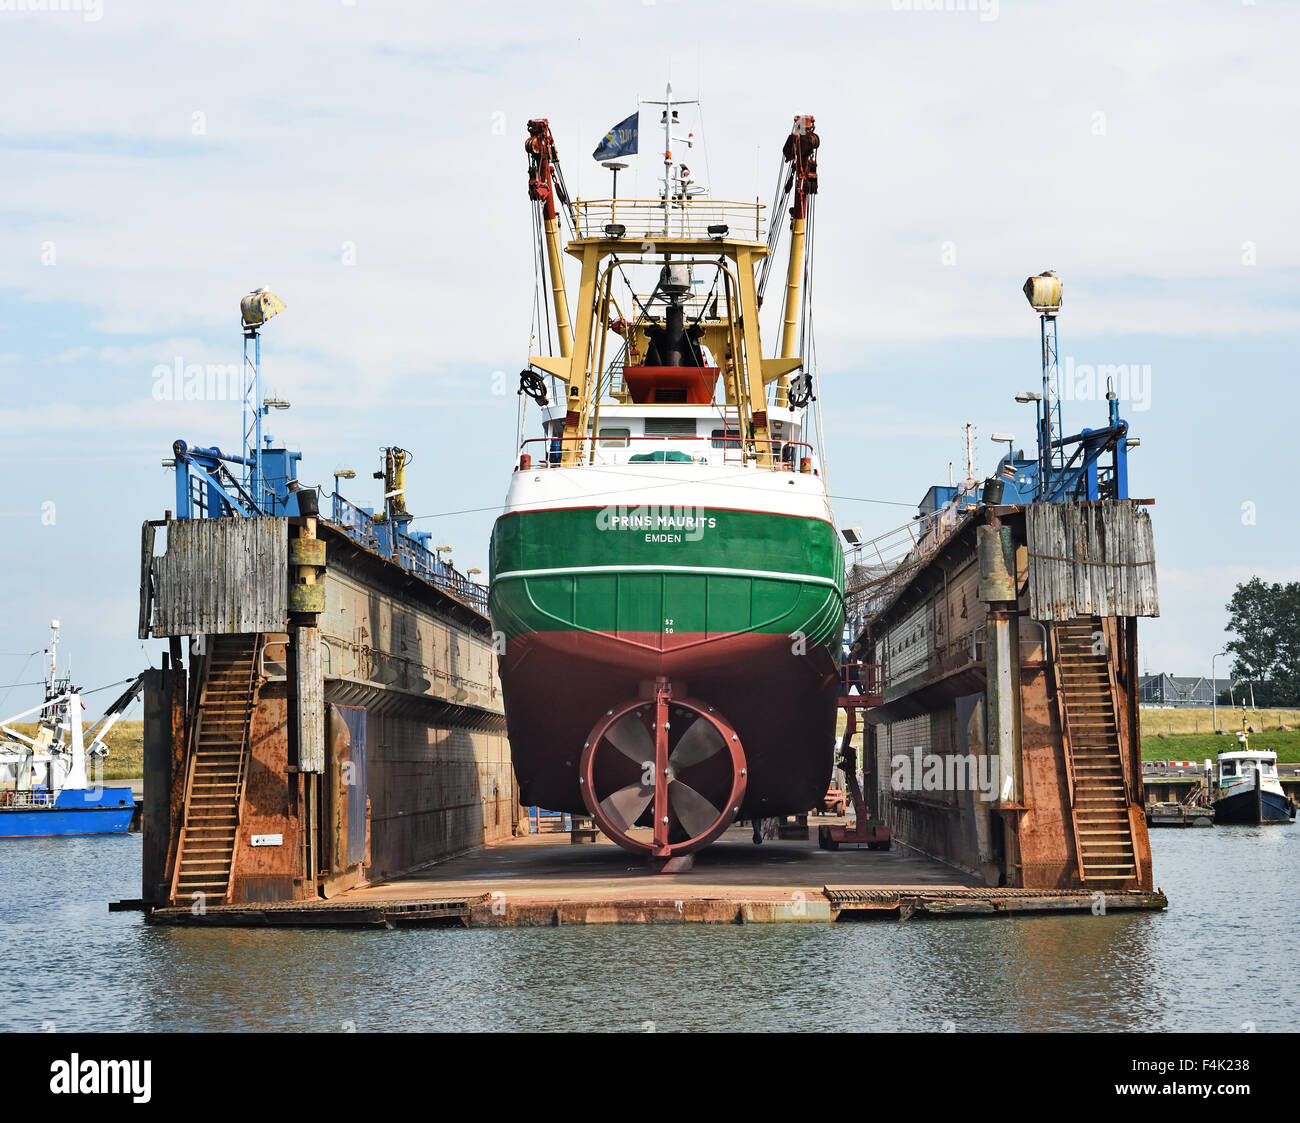 Oudeschild Texel Niederlande Fischtrawler schwimmenden Trockendock Werft Hafen Hafen Wadden Sea Wattenmeer Wad Stockfoto